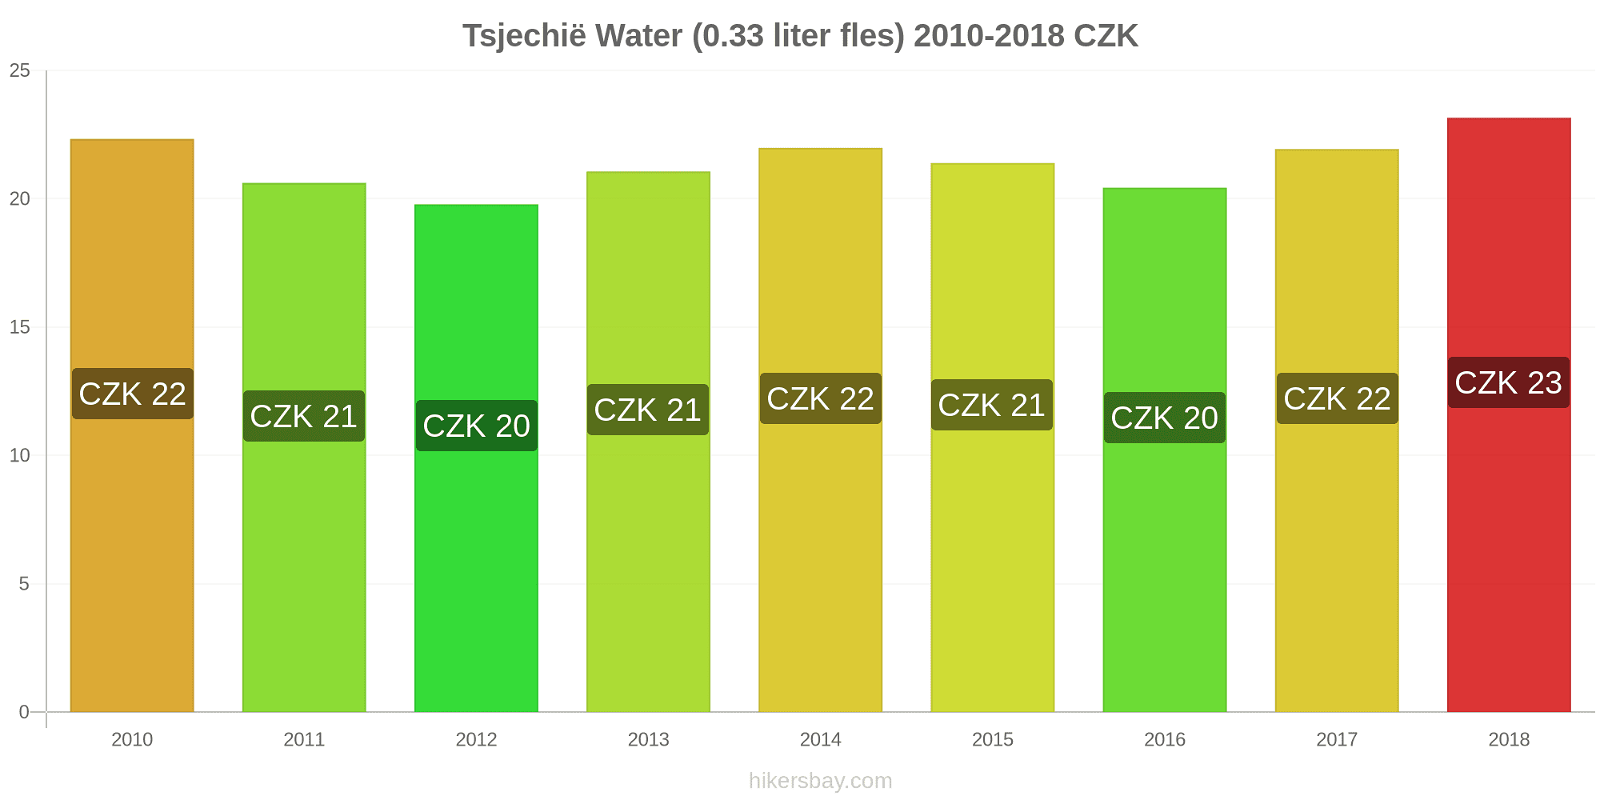 Tsjechië prijswijzigingen Water (0.33 liter fles) hikersbay.com